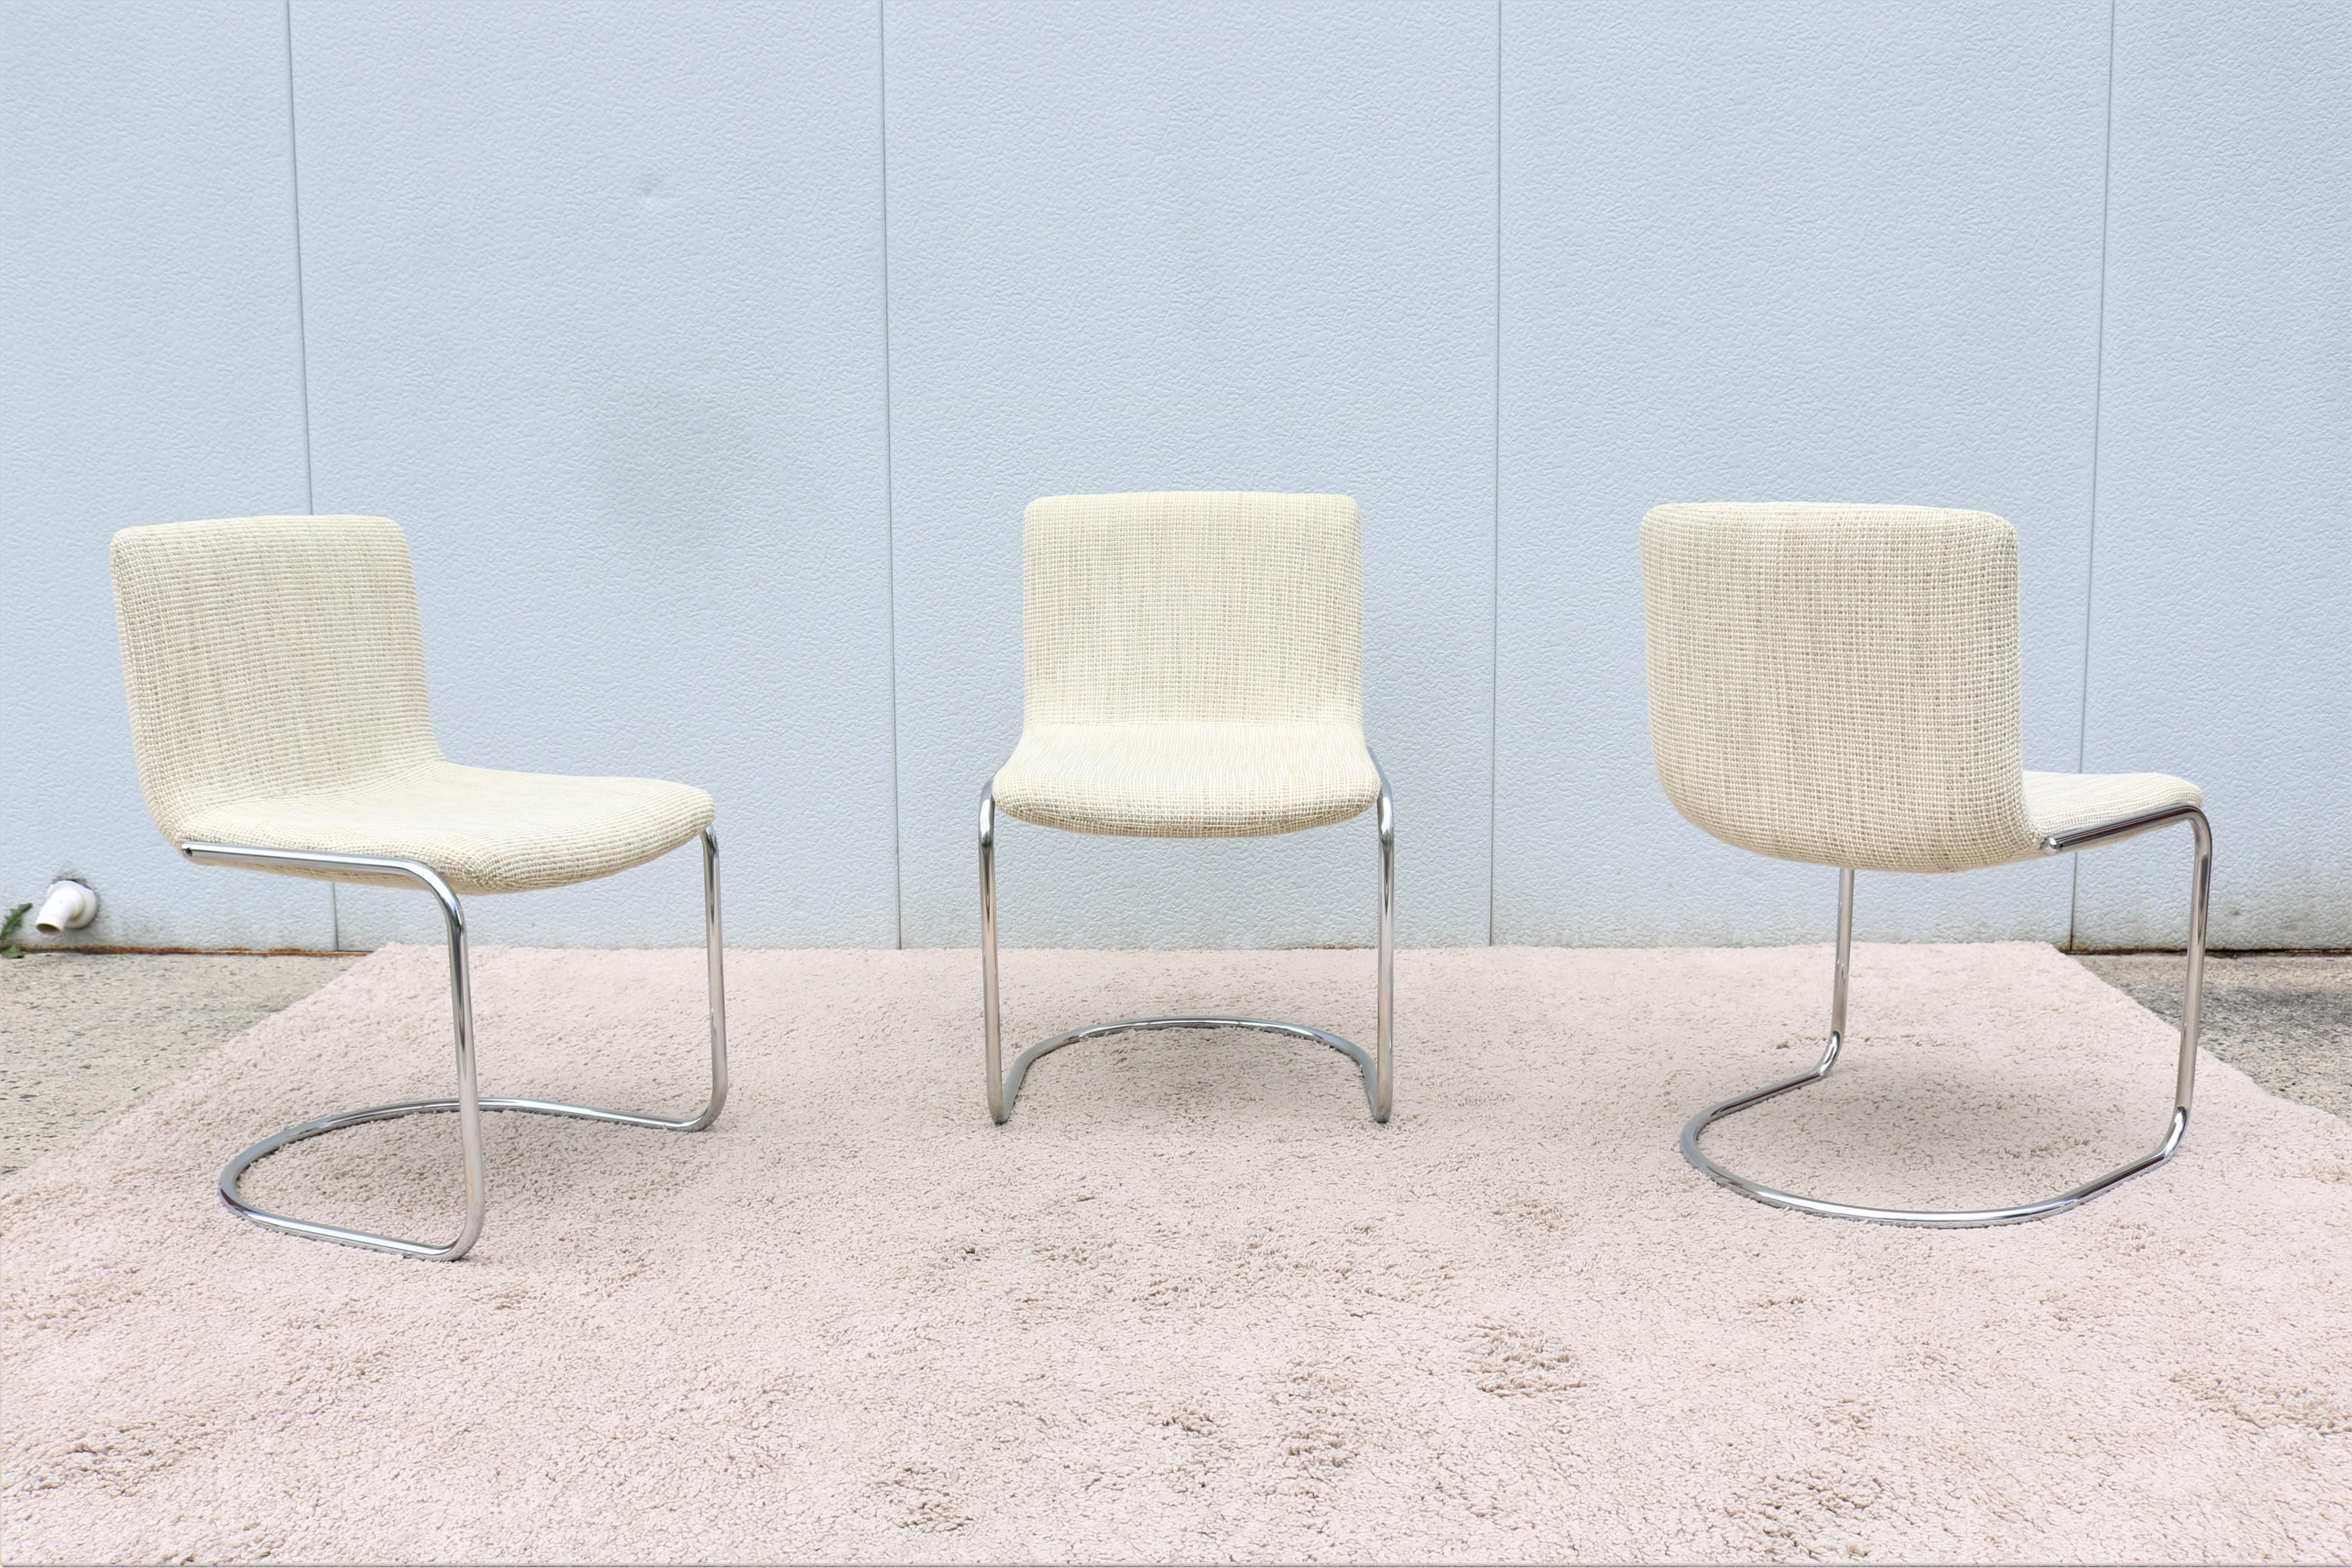 Merveilleux ensemble de 3 chaises de salle à manger de style Mid-Century Modern des années 1970, conçu par Giovanni Offredi pour Saporiti Italia en 1968.
La chaise Collection S est l'un des classiques des collections Saporiti. La structure